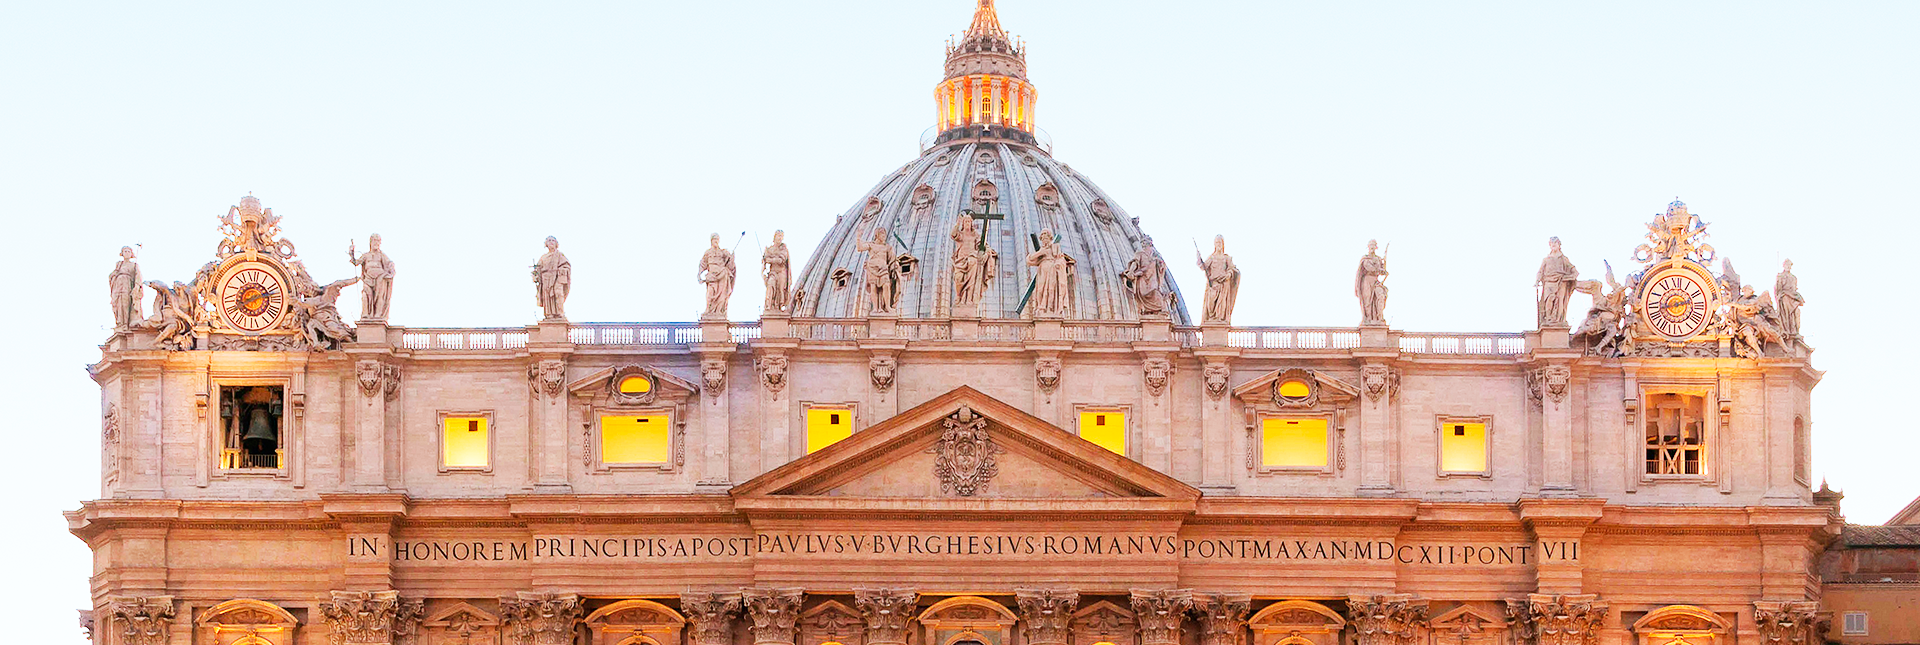 Museos vaticanos, Capilla Sixtina y Basílica de San Pedro sin filas